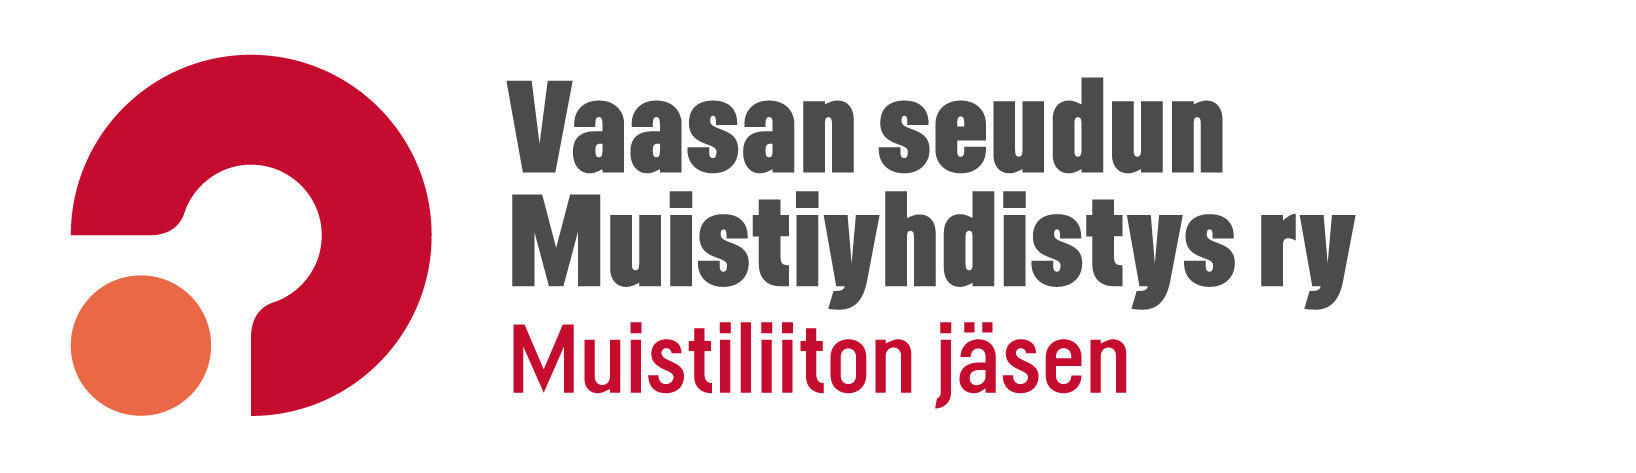 MUISTILIITTO Vaasan seudun Muistiyhdistys ry logo 2013 rgb vaaka